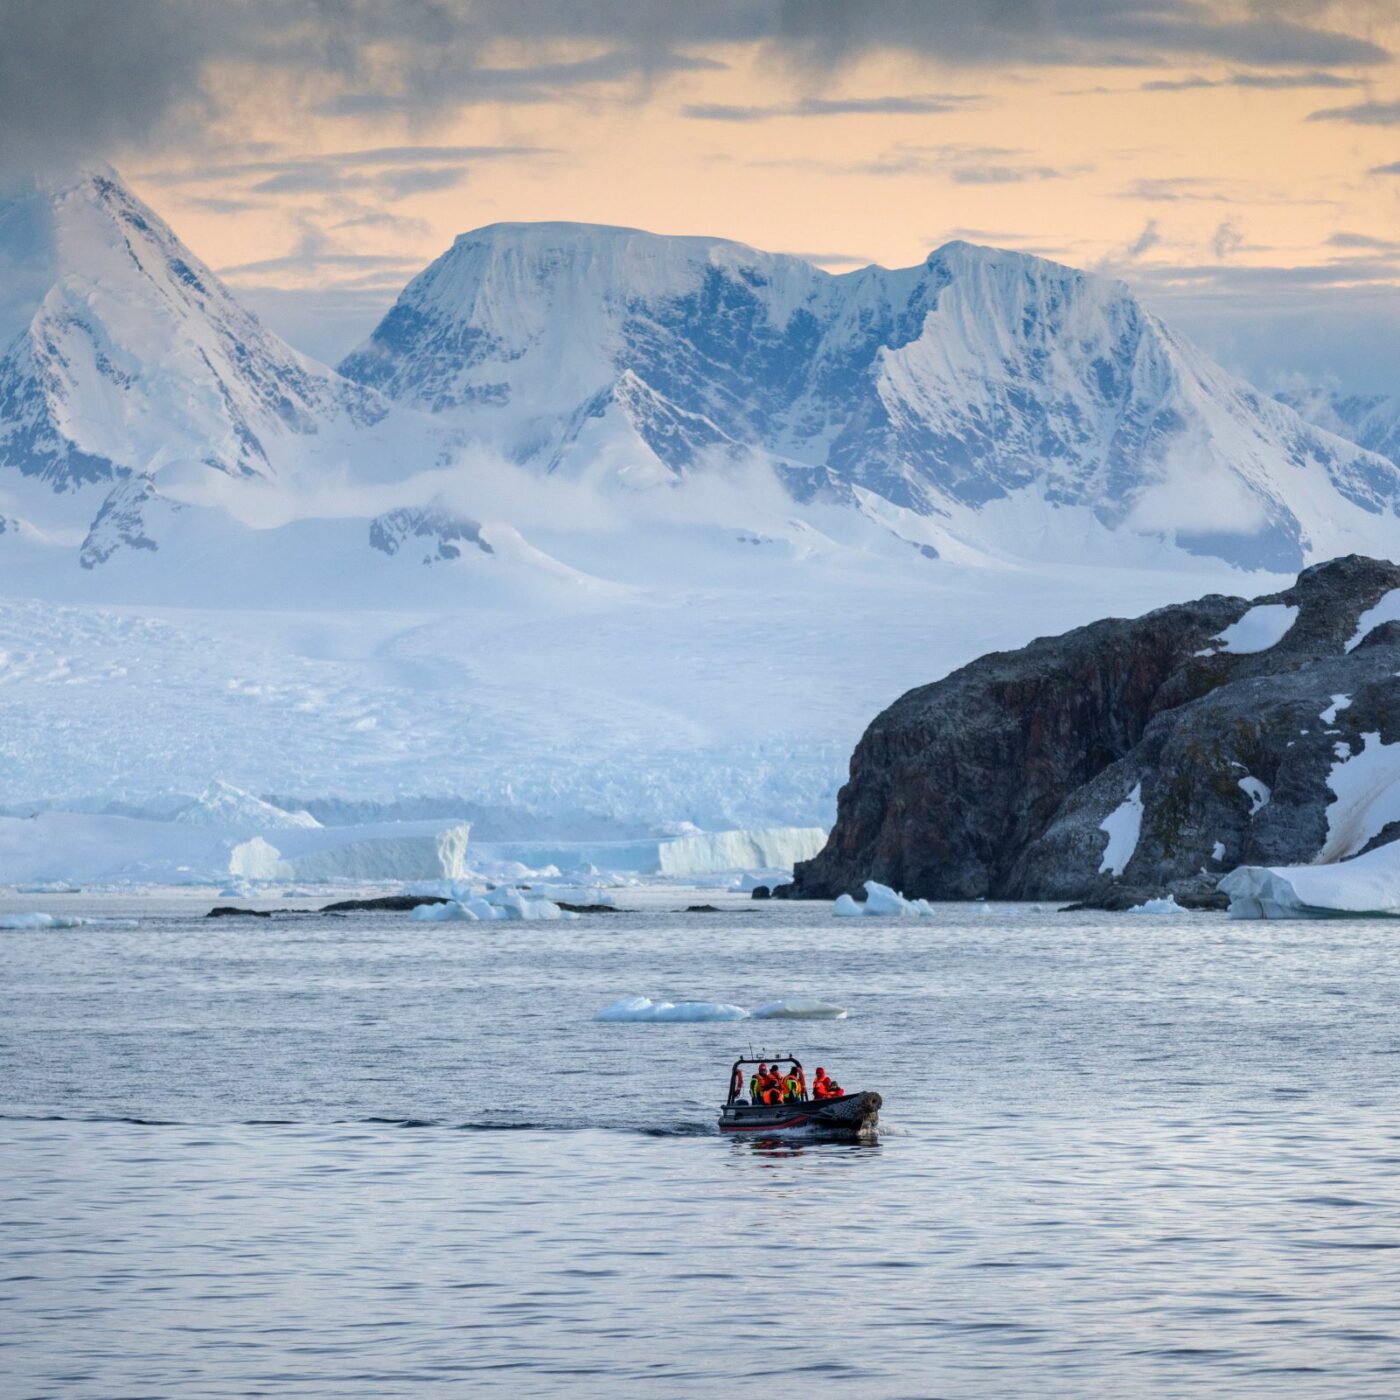 Entre la fragilidad y la sorprendente belleza antártica: registros una expedición científica al Continente Blanco